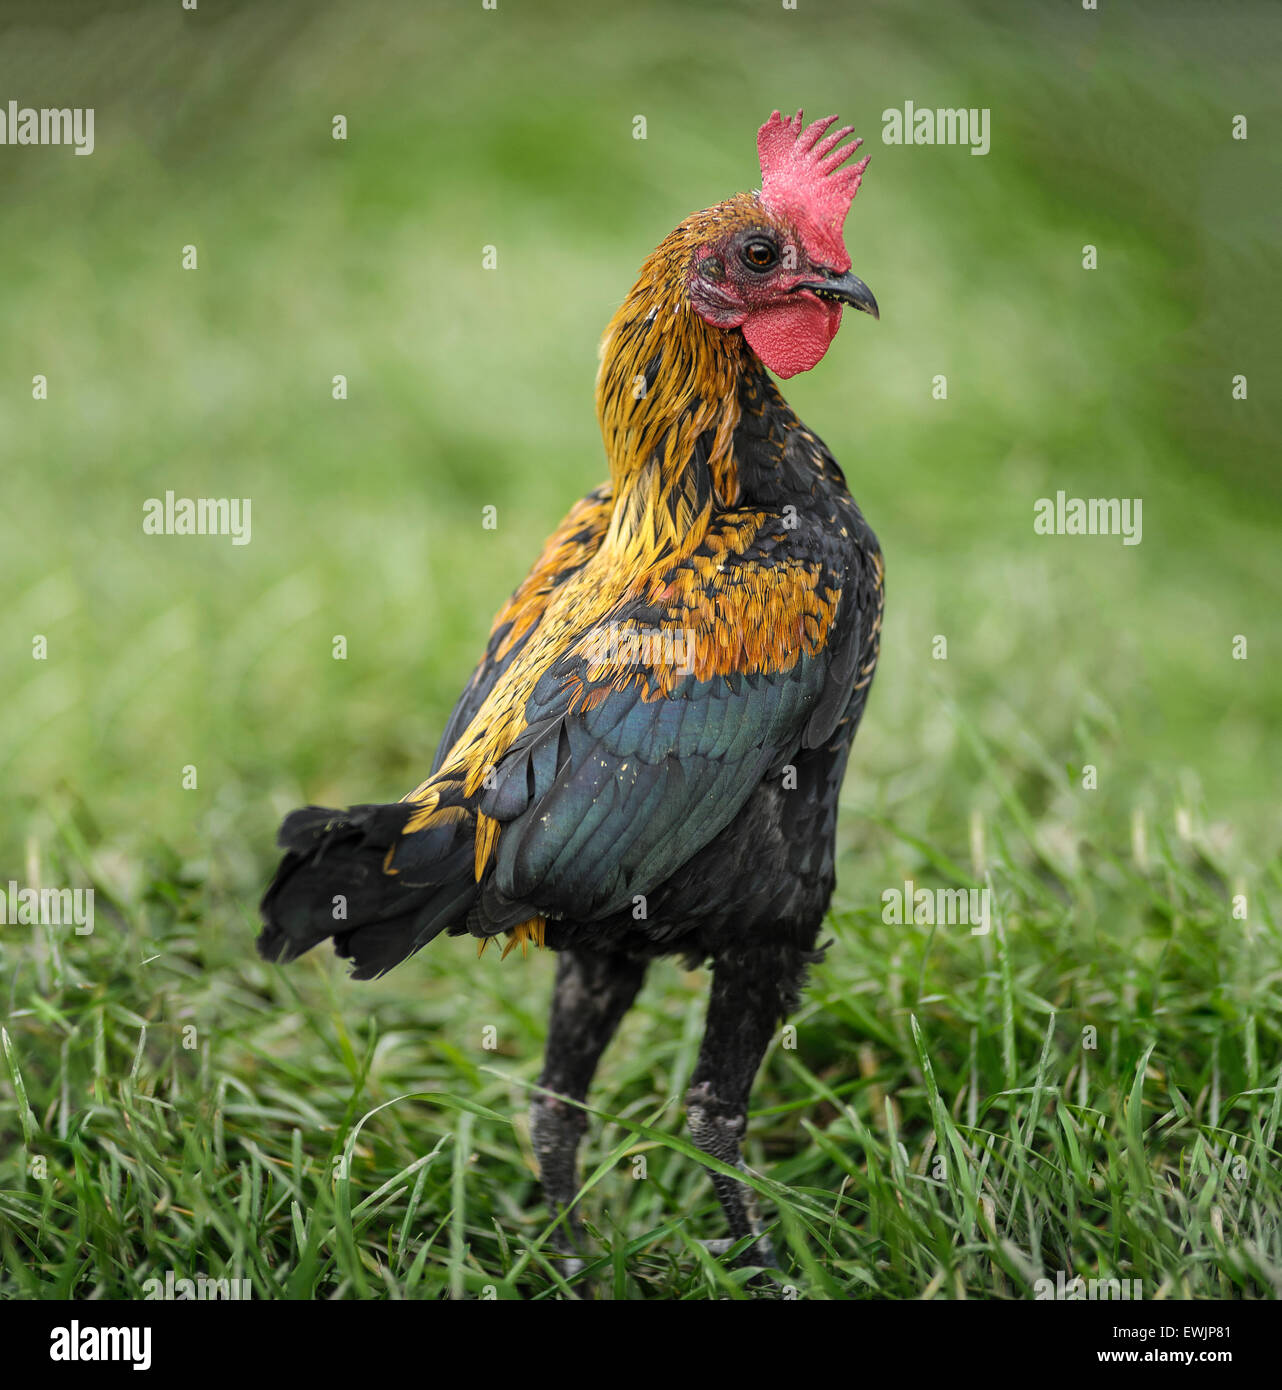 chicken hen in grass yard Stock Photo